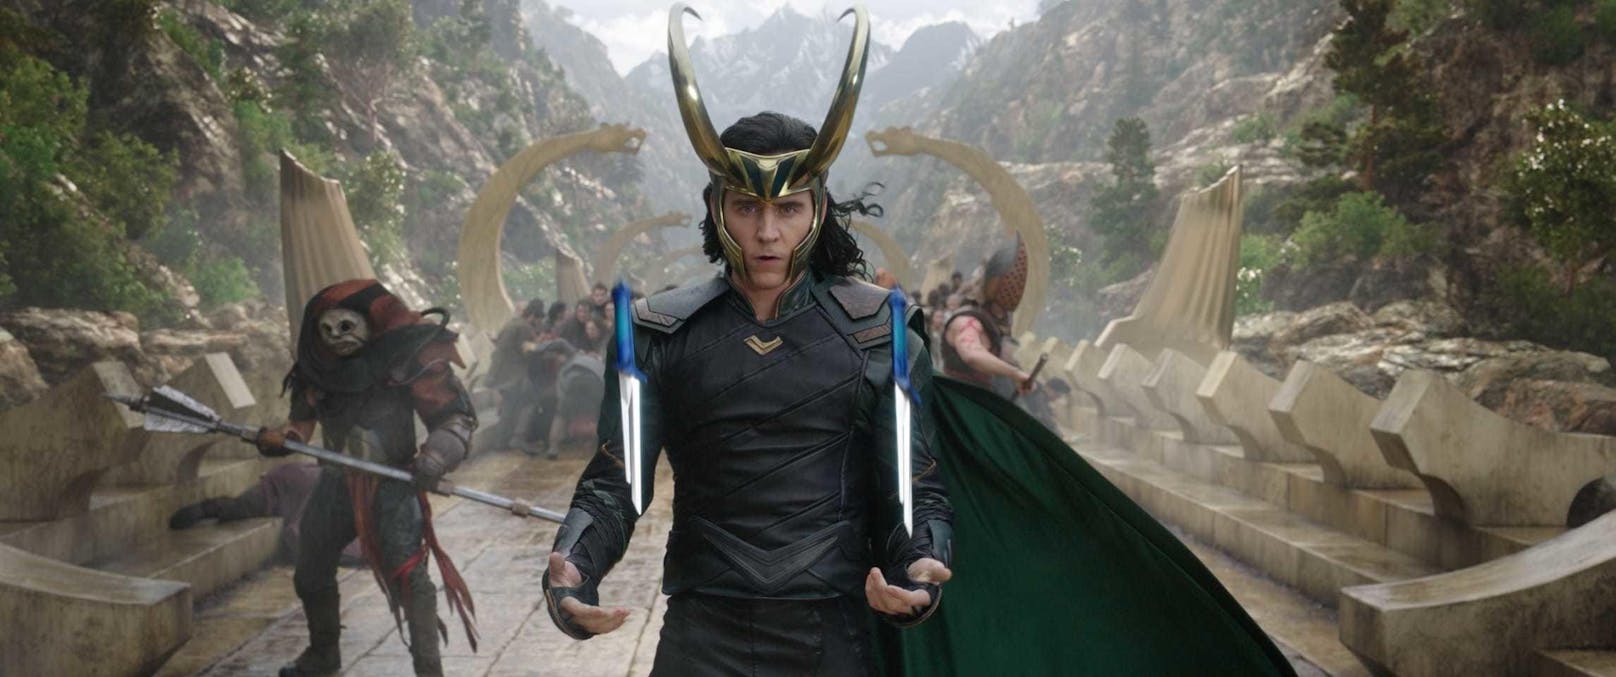 Loki ohne Zepter aber mit Waffen